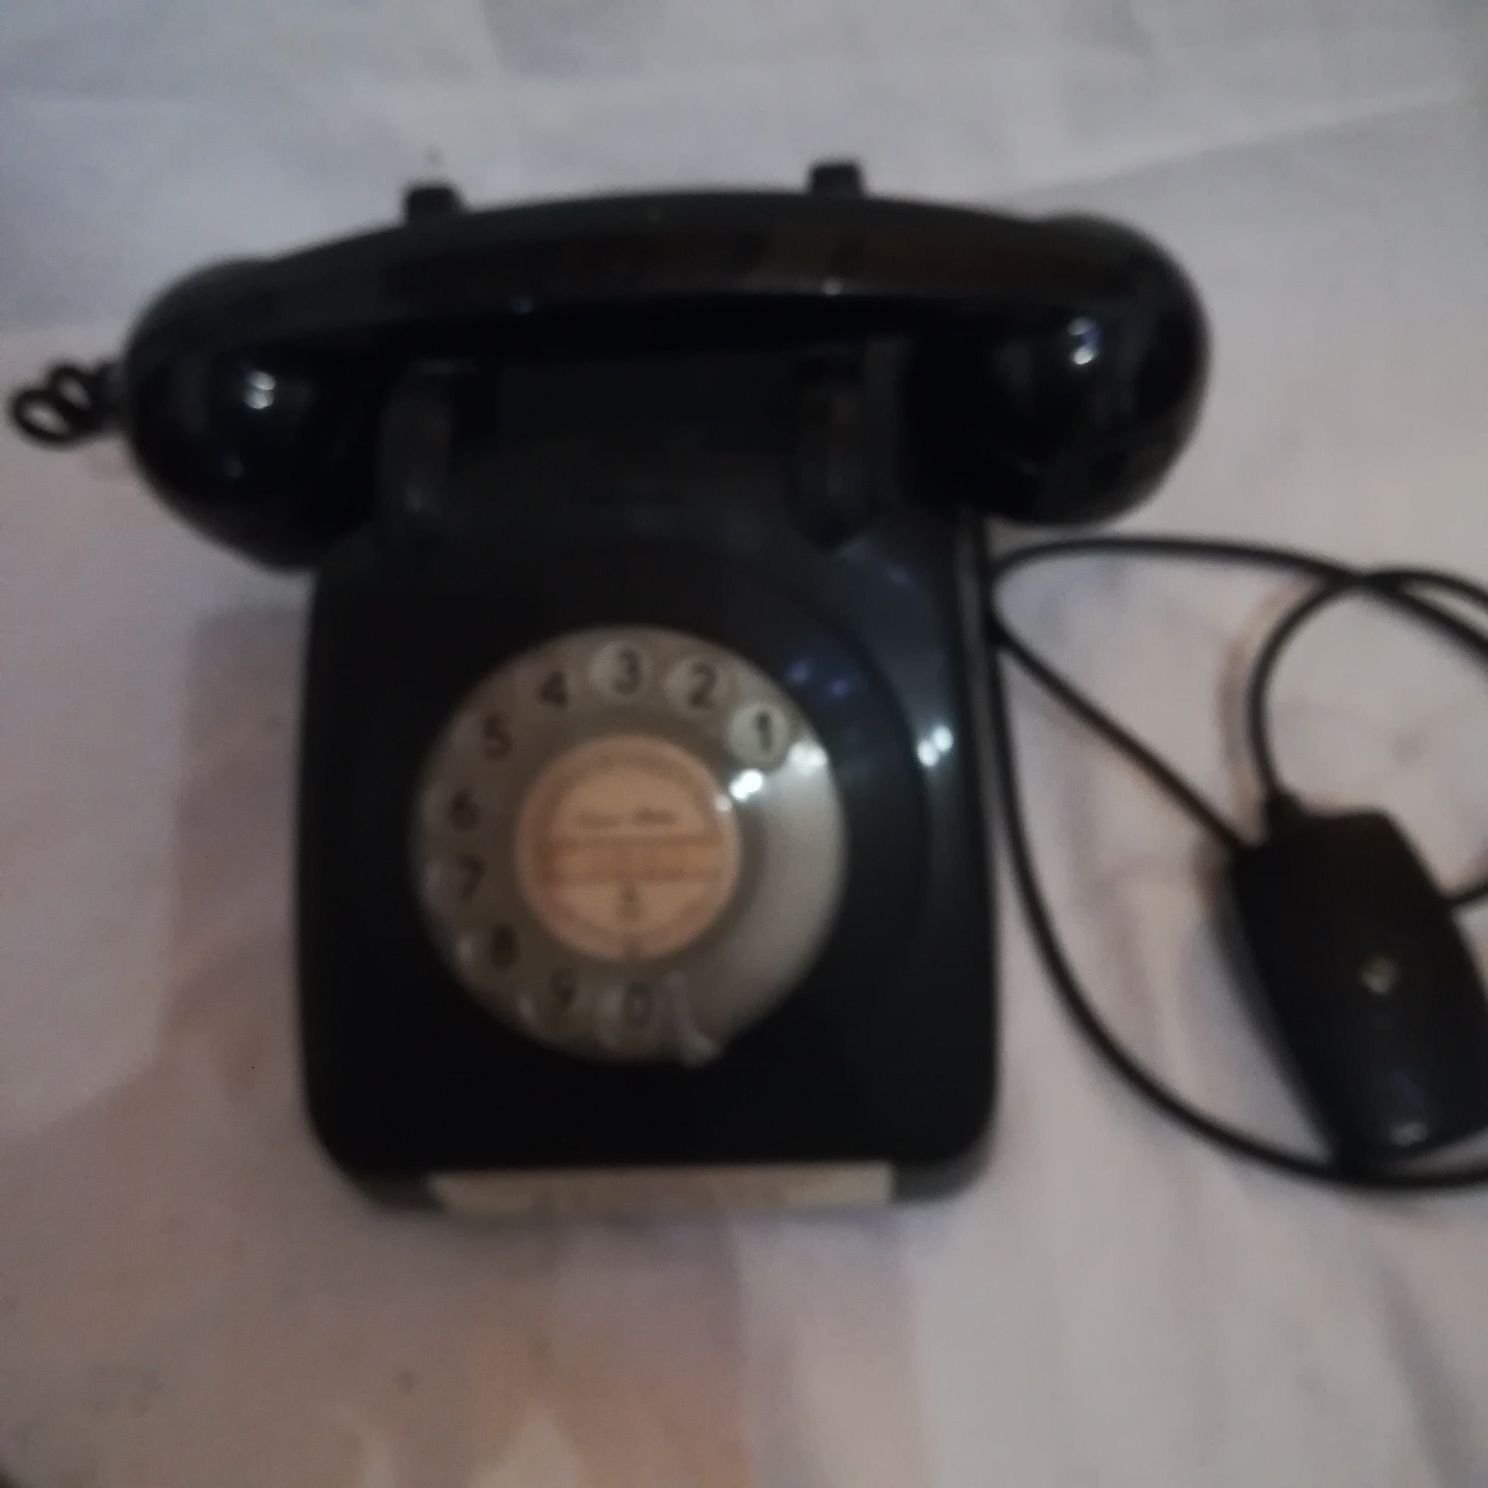 Telefone analógico anos 80